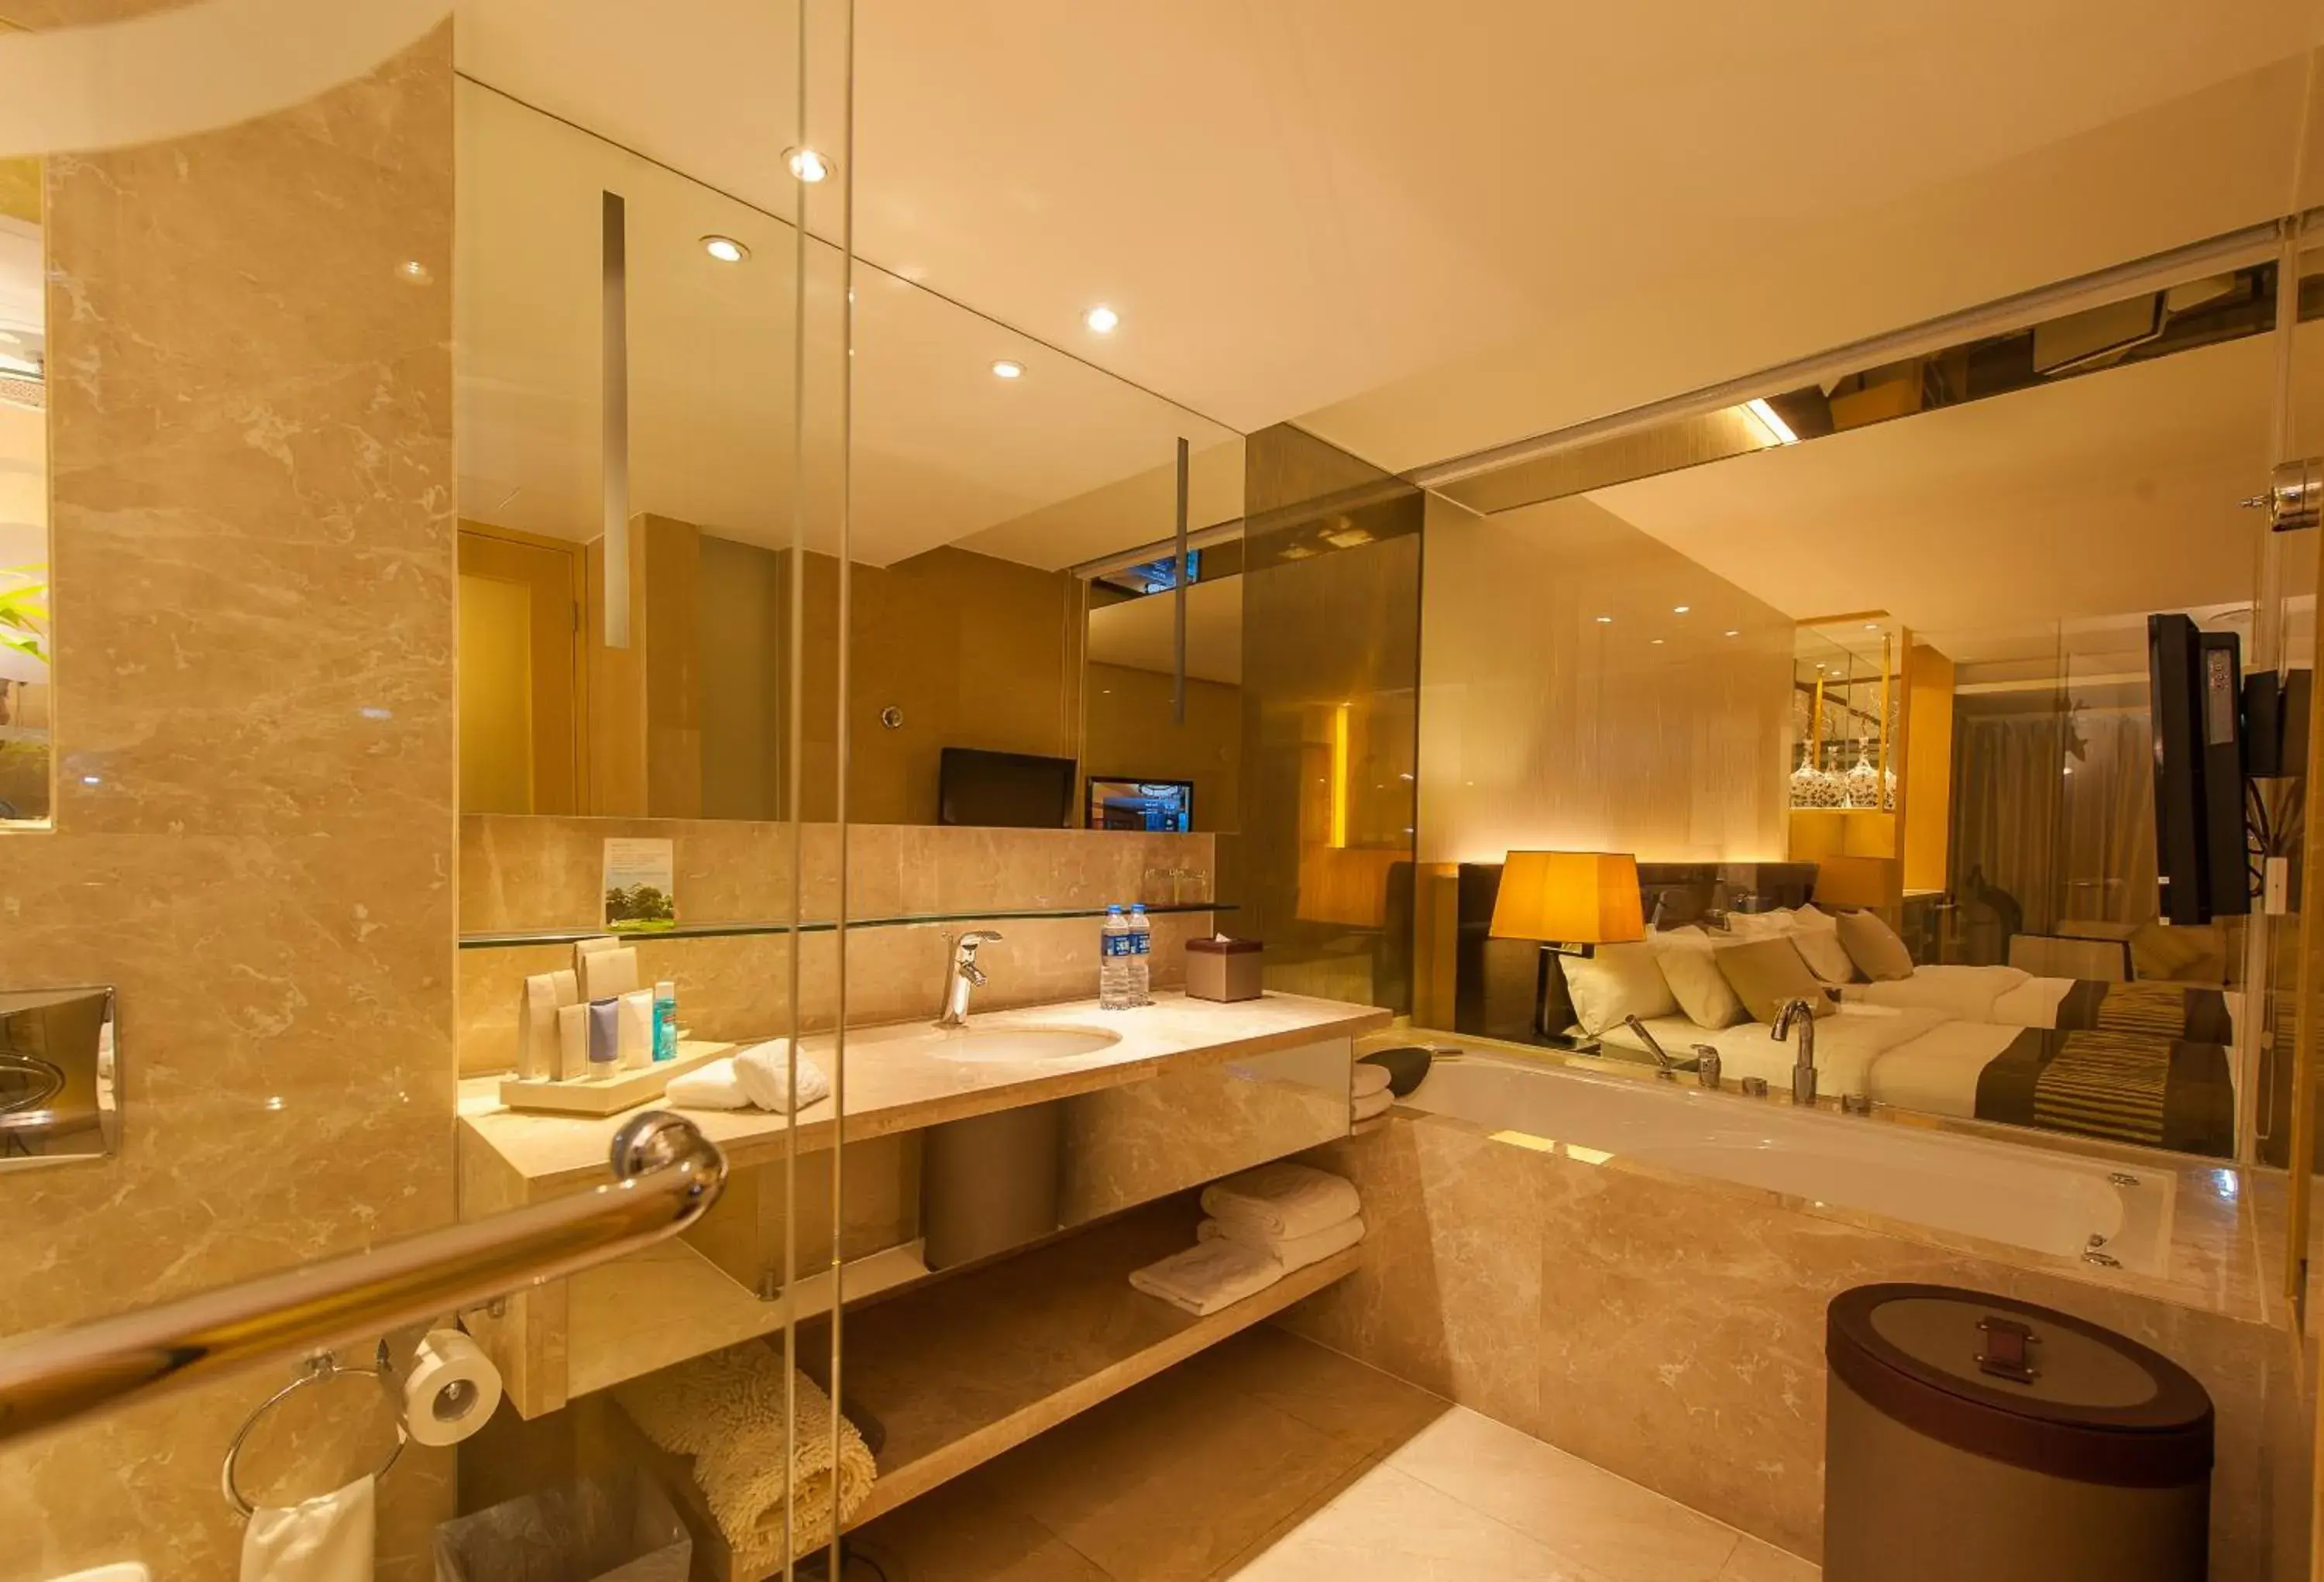 Toilet, Bathroom in Mission Hills Hotel Resorts Shenzhen